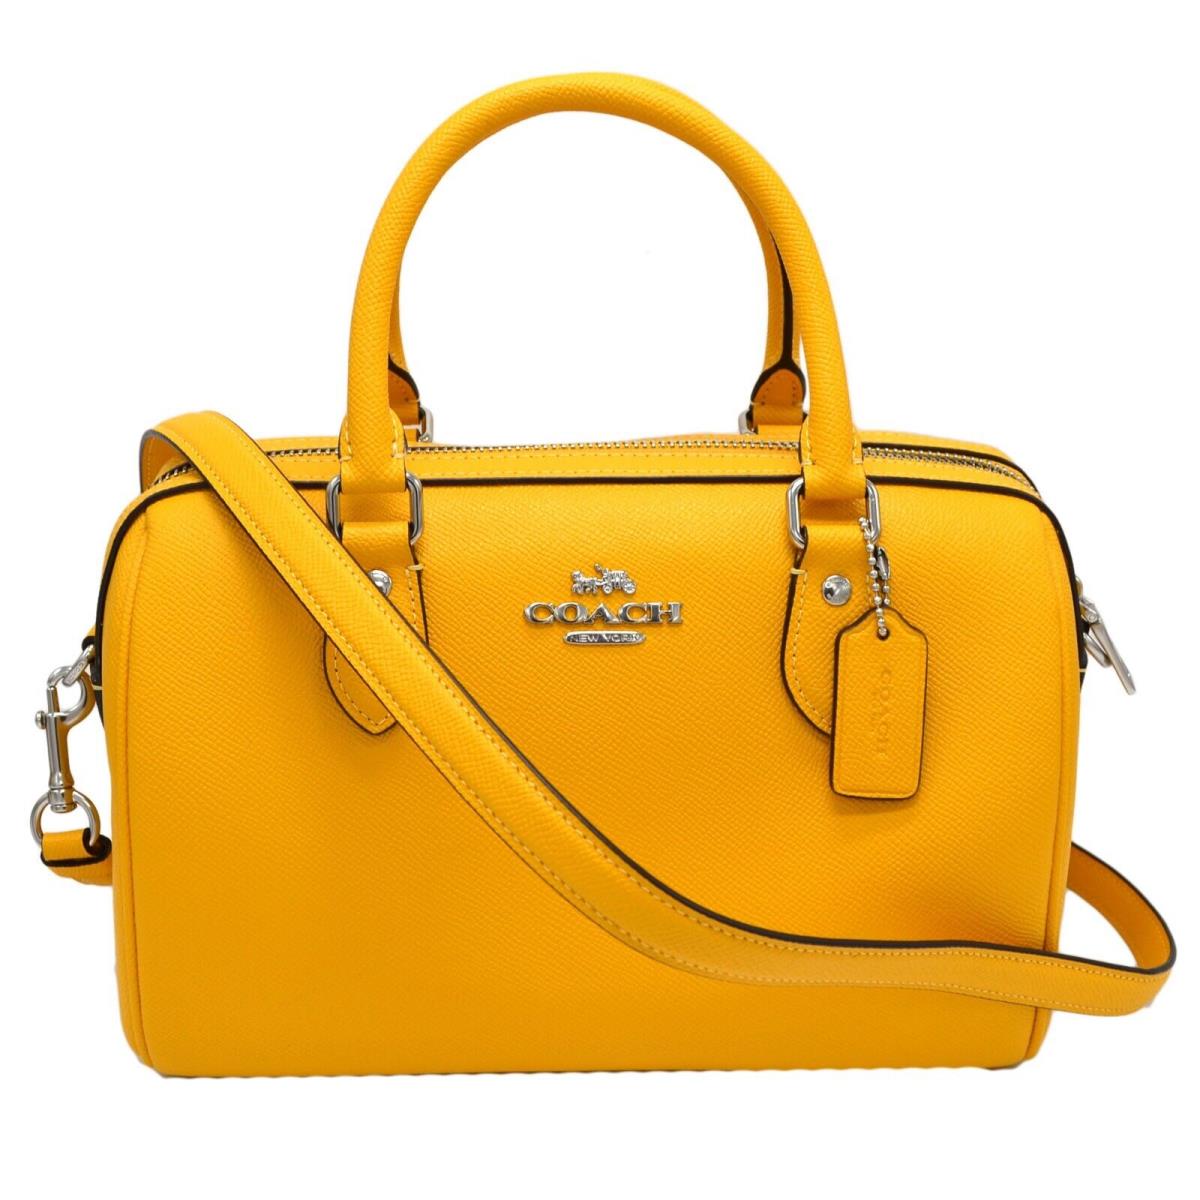 Coach Yellow shoulder bag | Shopee Malaysia